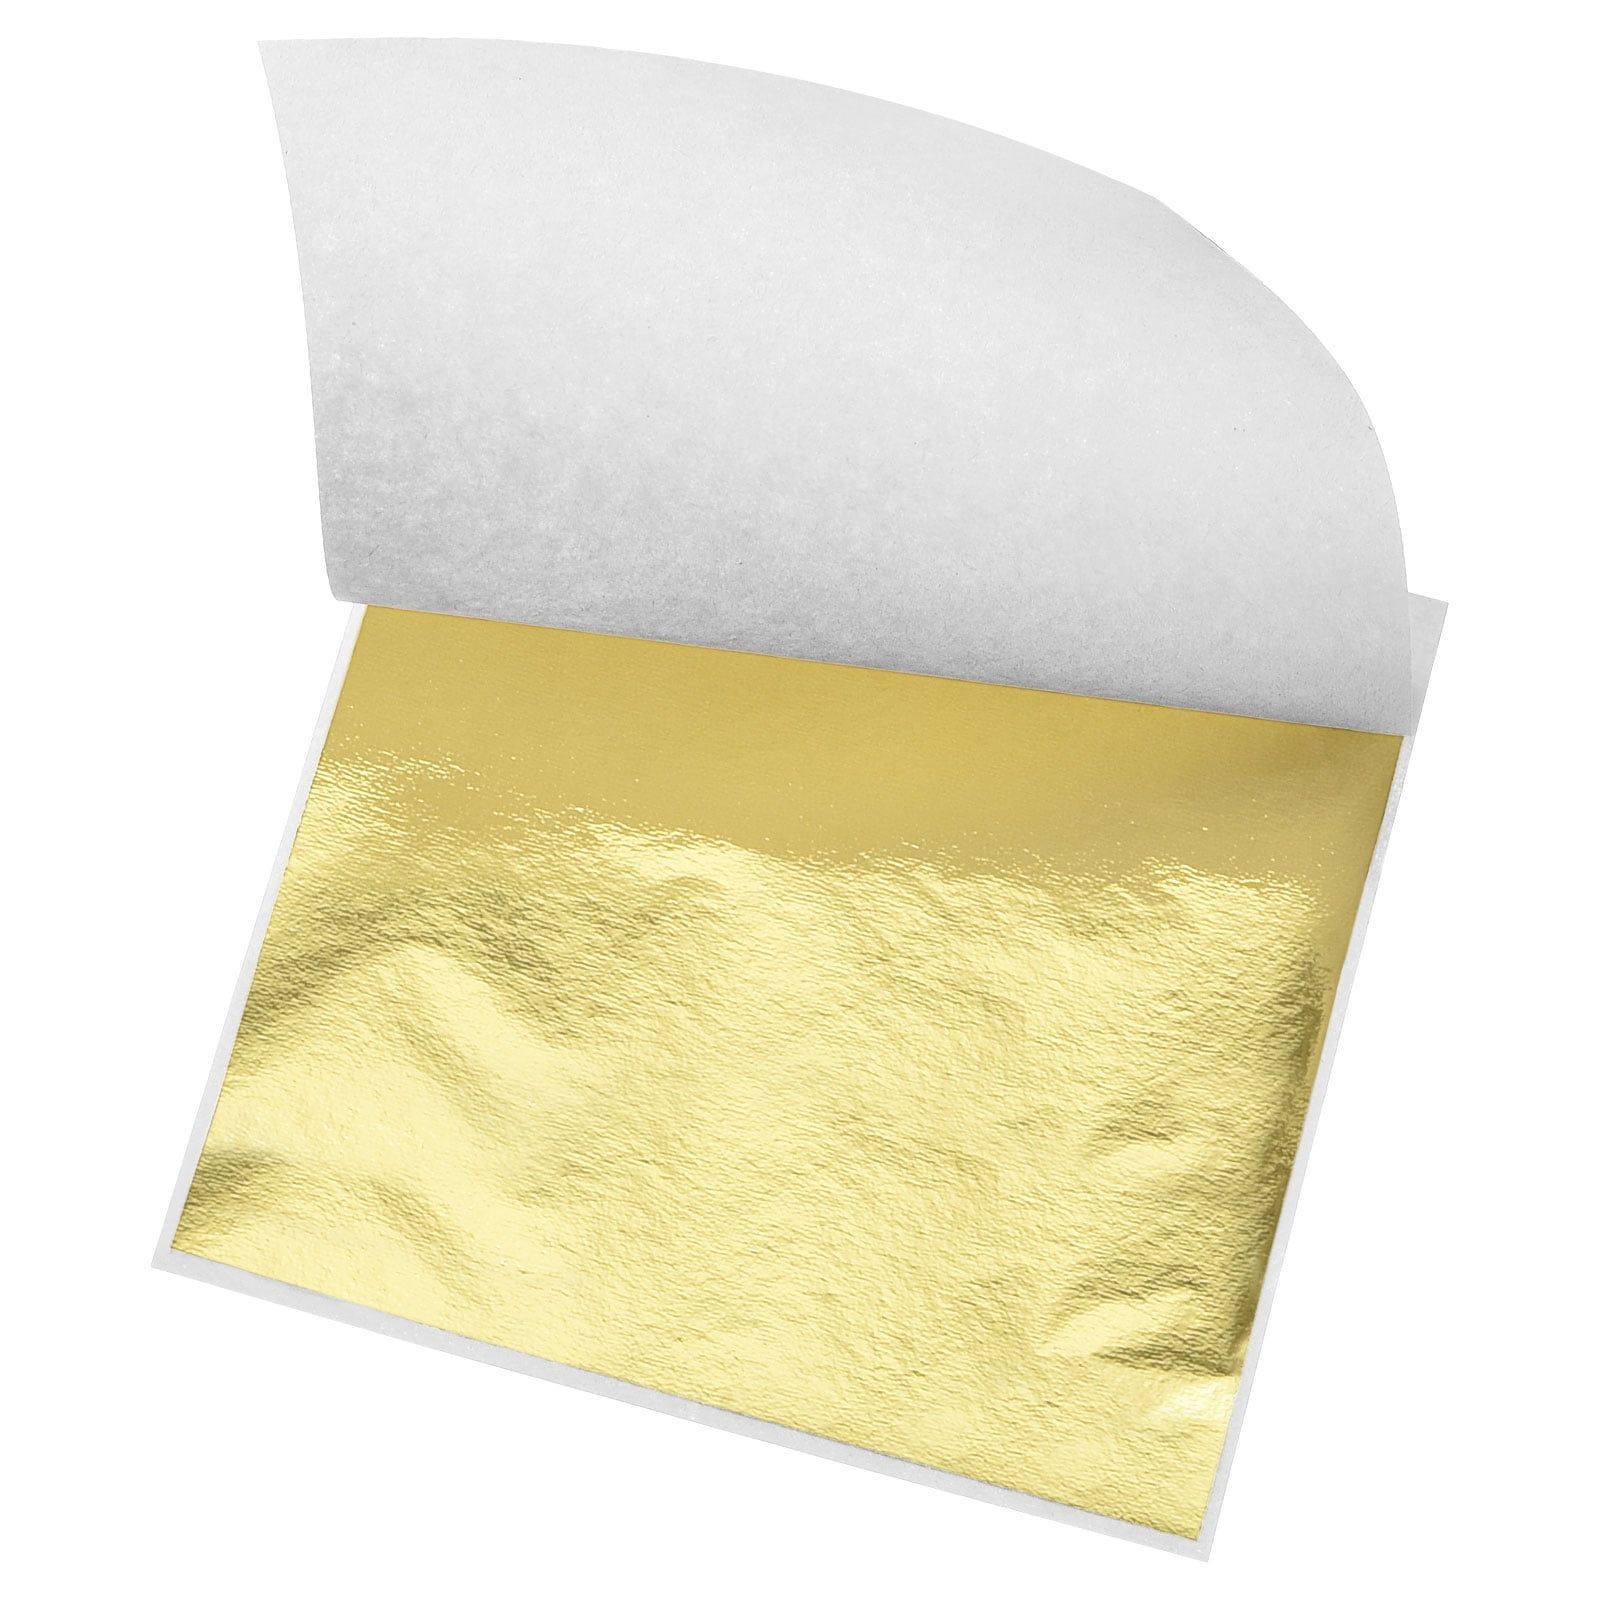 Gold Foil Sheet